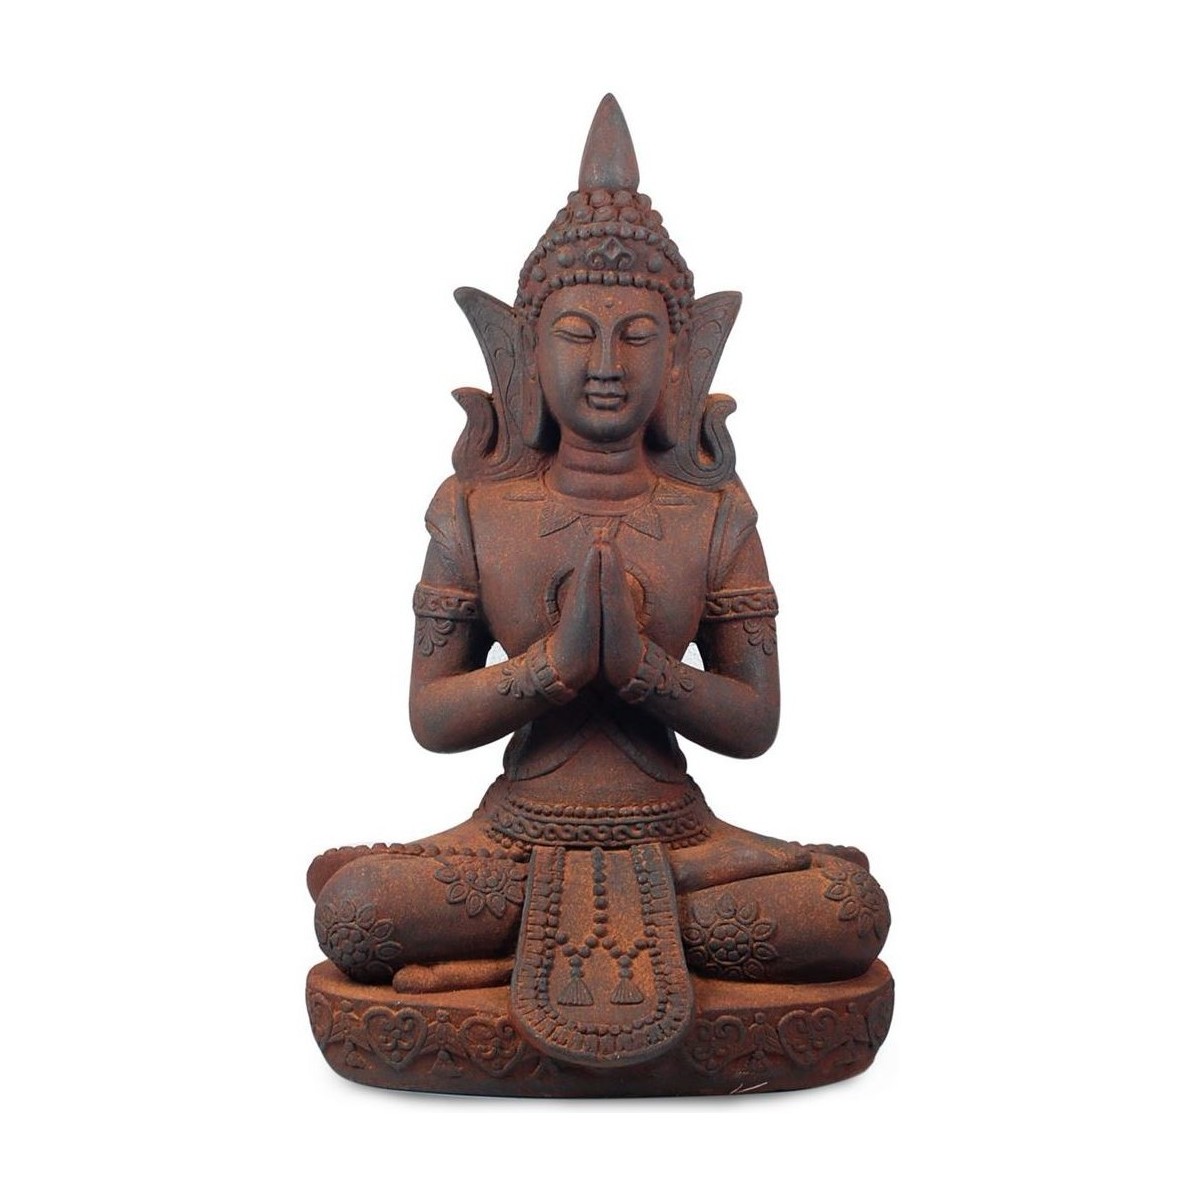 Maison & Déco Statuettes et figurines Signes Grimalt Bouddha Gris